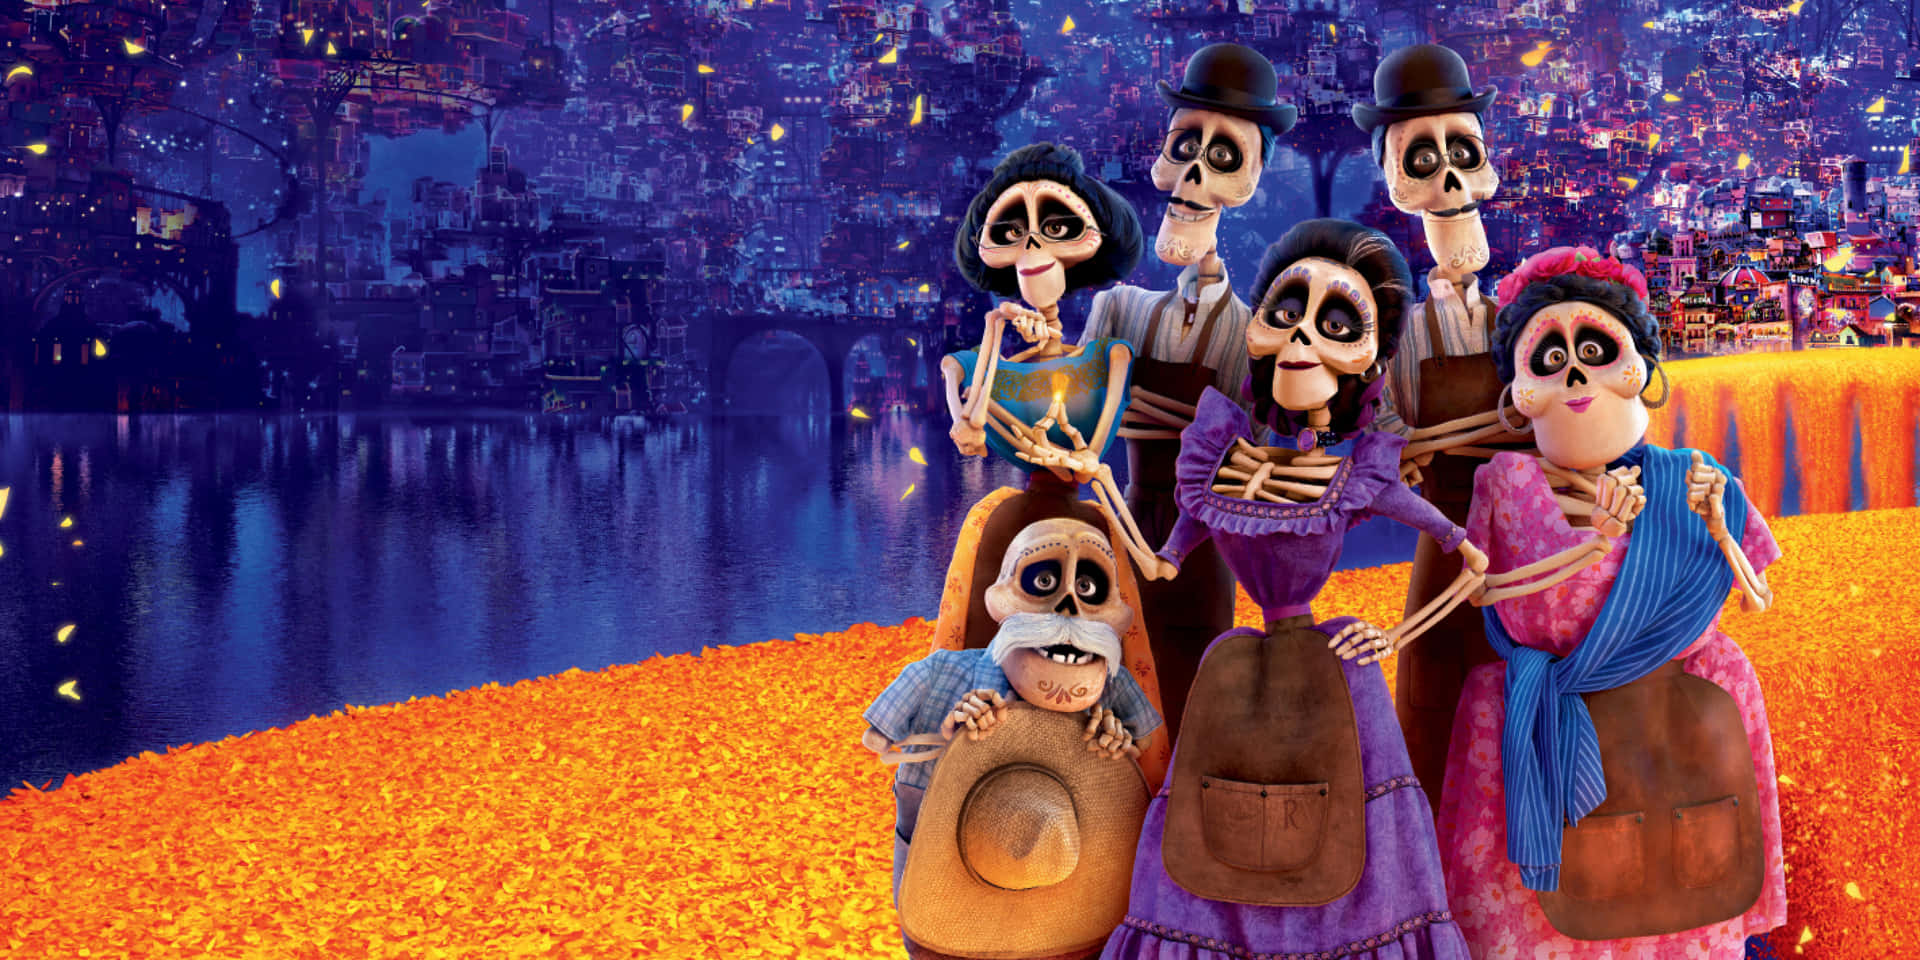 Fejr rejsen for Miguel og Hector i det gribende film, Coco Disney! Wallpaper